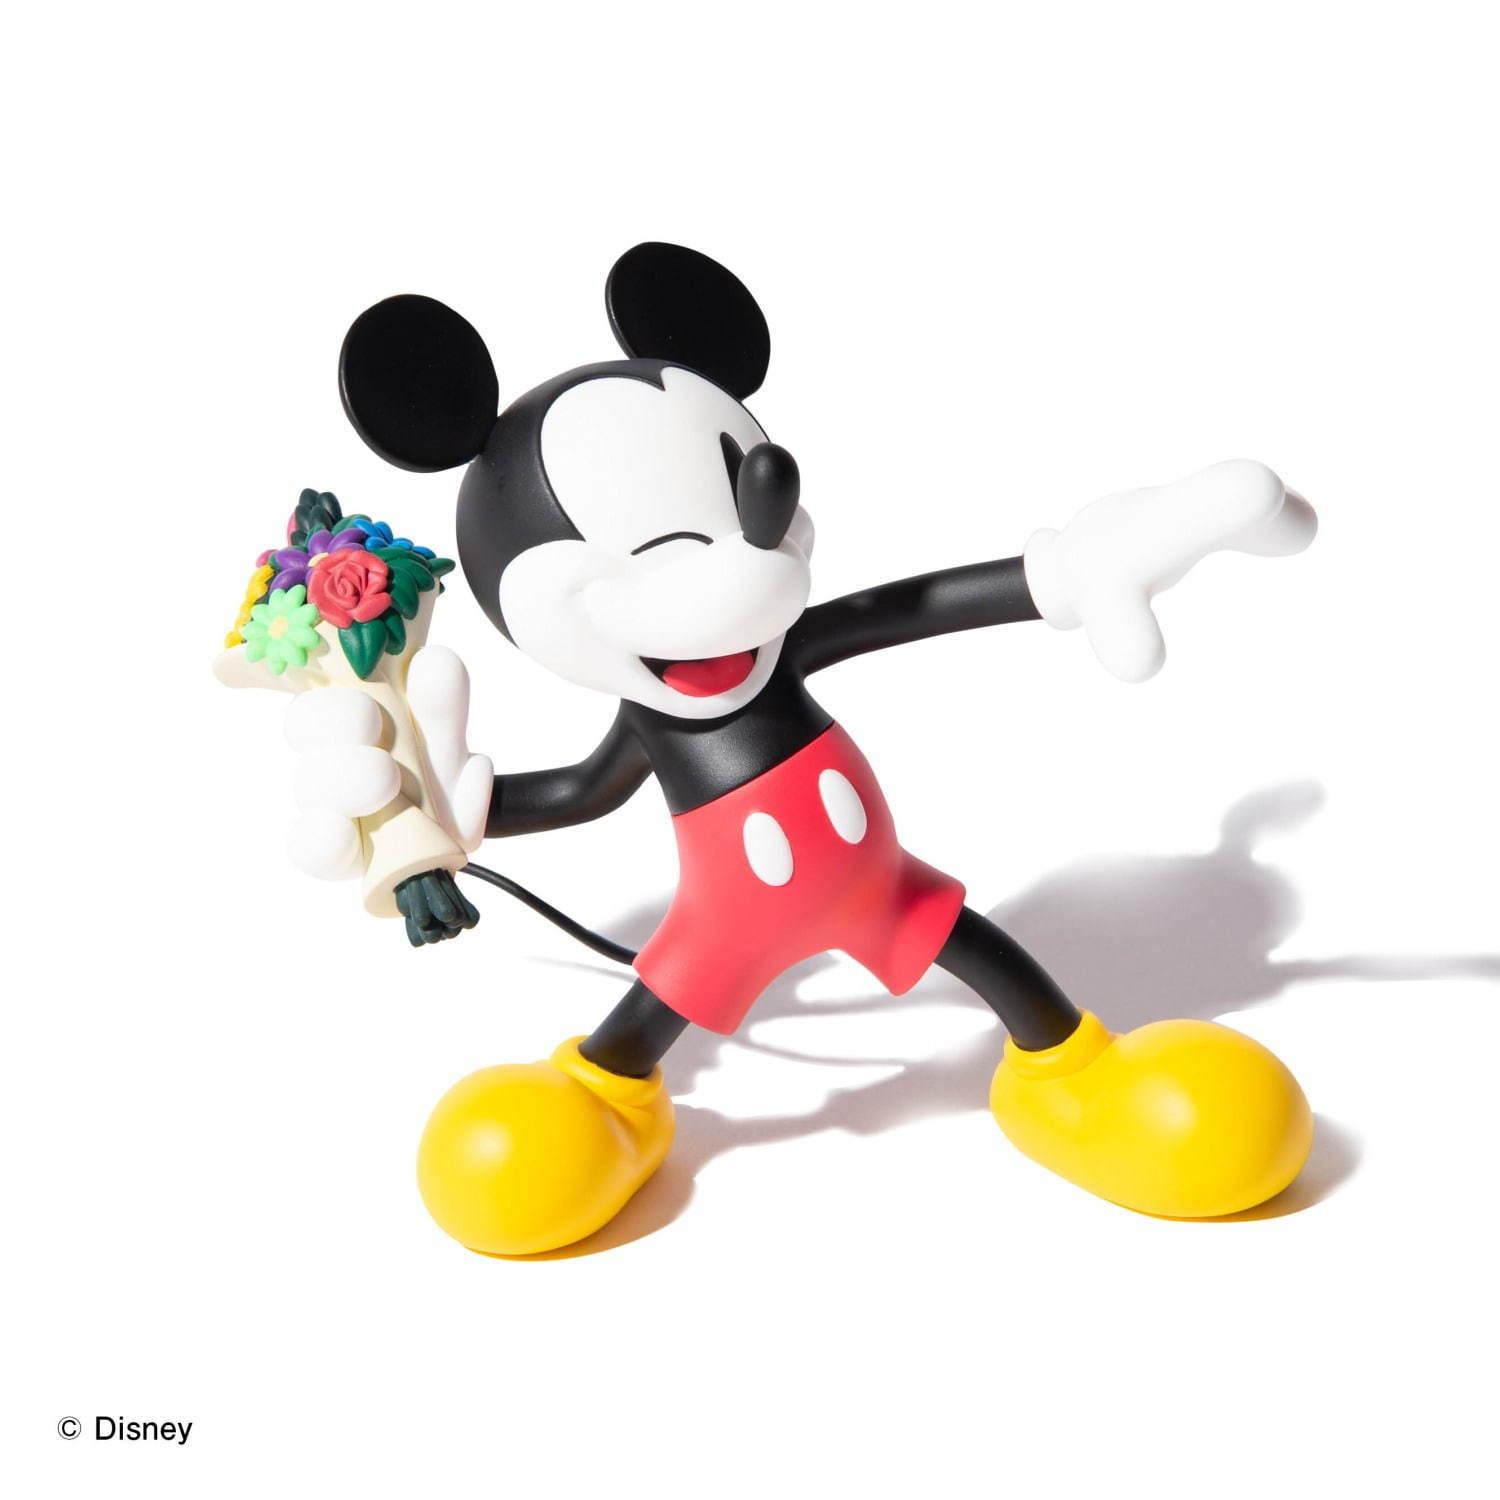 メディコム・トイ×glamb、花束を投げるミッキーマウスの限定フィギュア発売 コピー